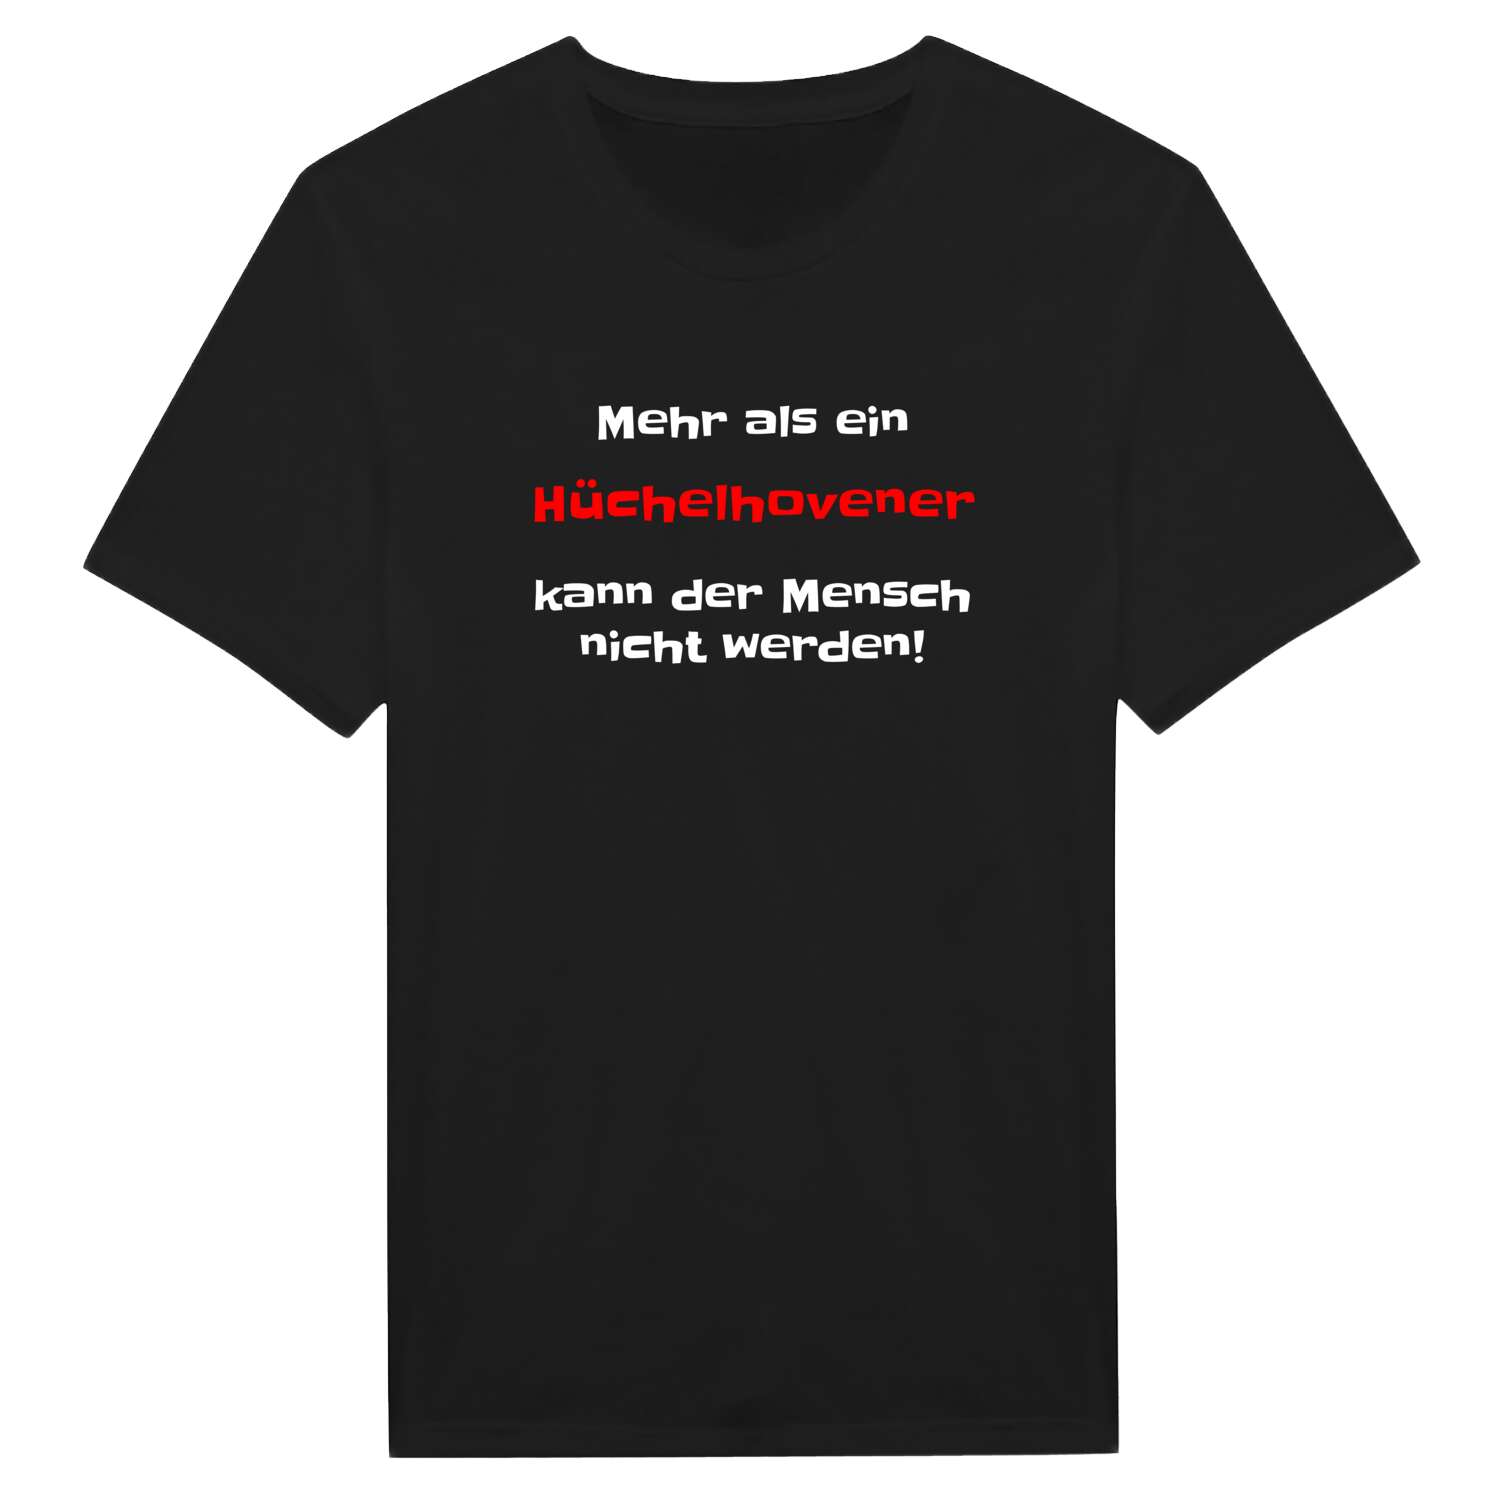 Hüchelhoven T-Shirt »Mehr als ein«